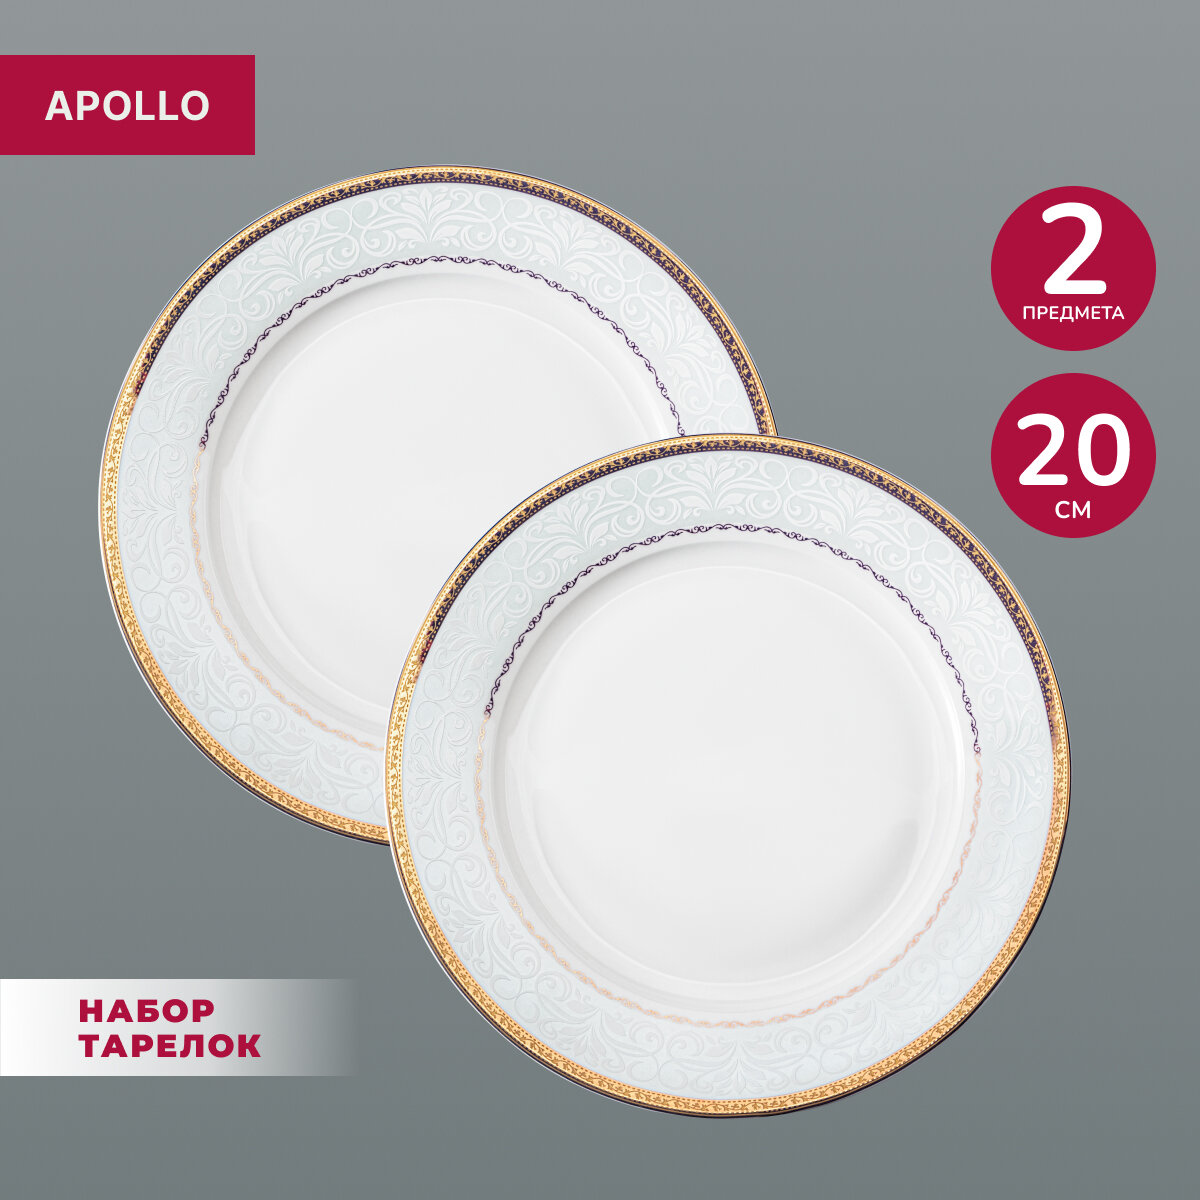 Тарелка обеденная фарфоровая Apollo "Rixos", 2 предмета в наборе, диаметр 20 см